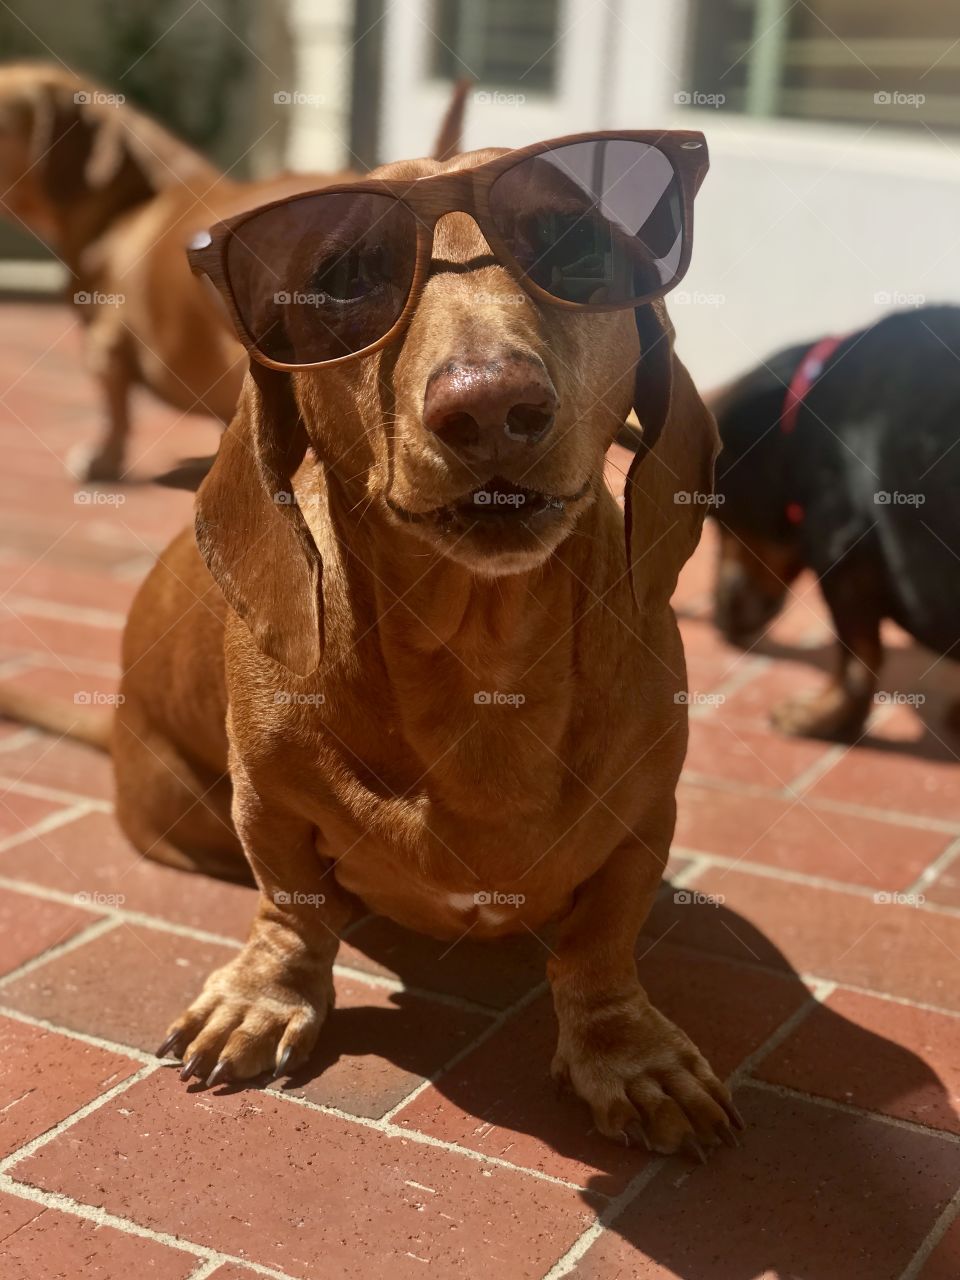 Cute dachshund in sunglasses.